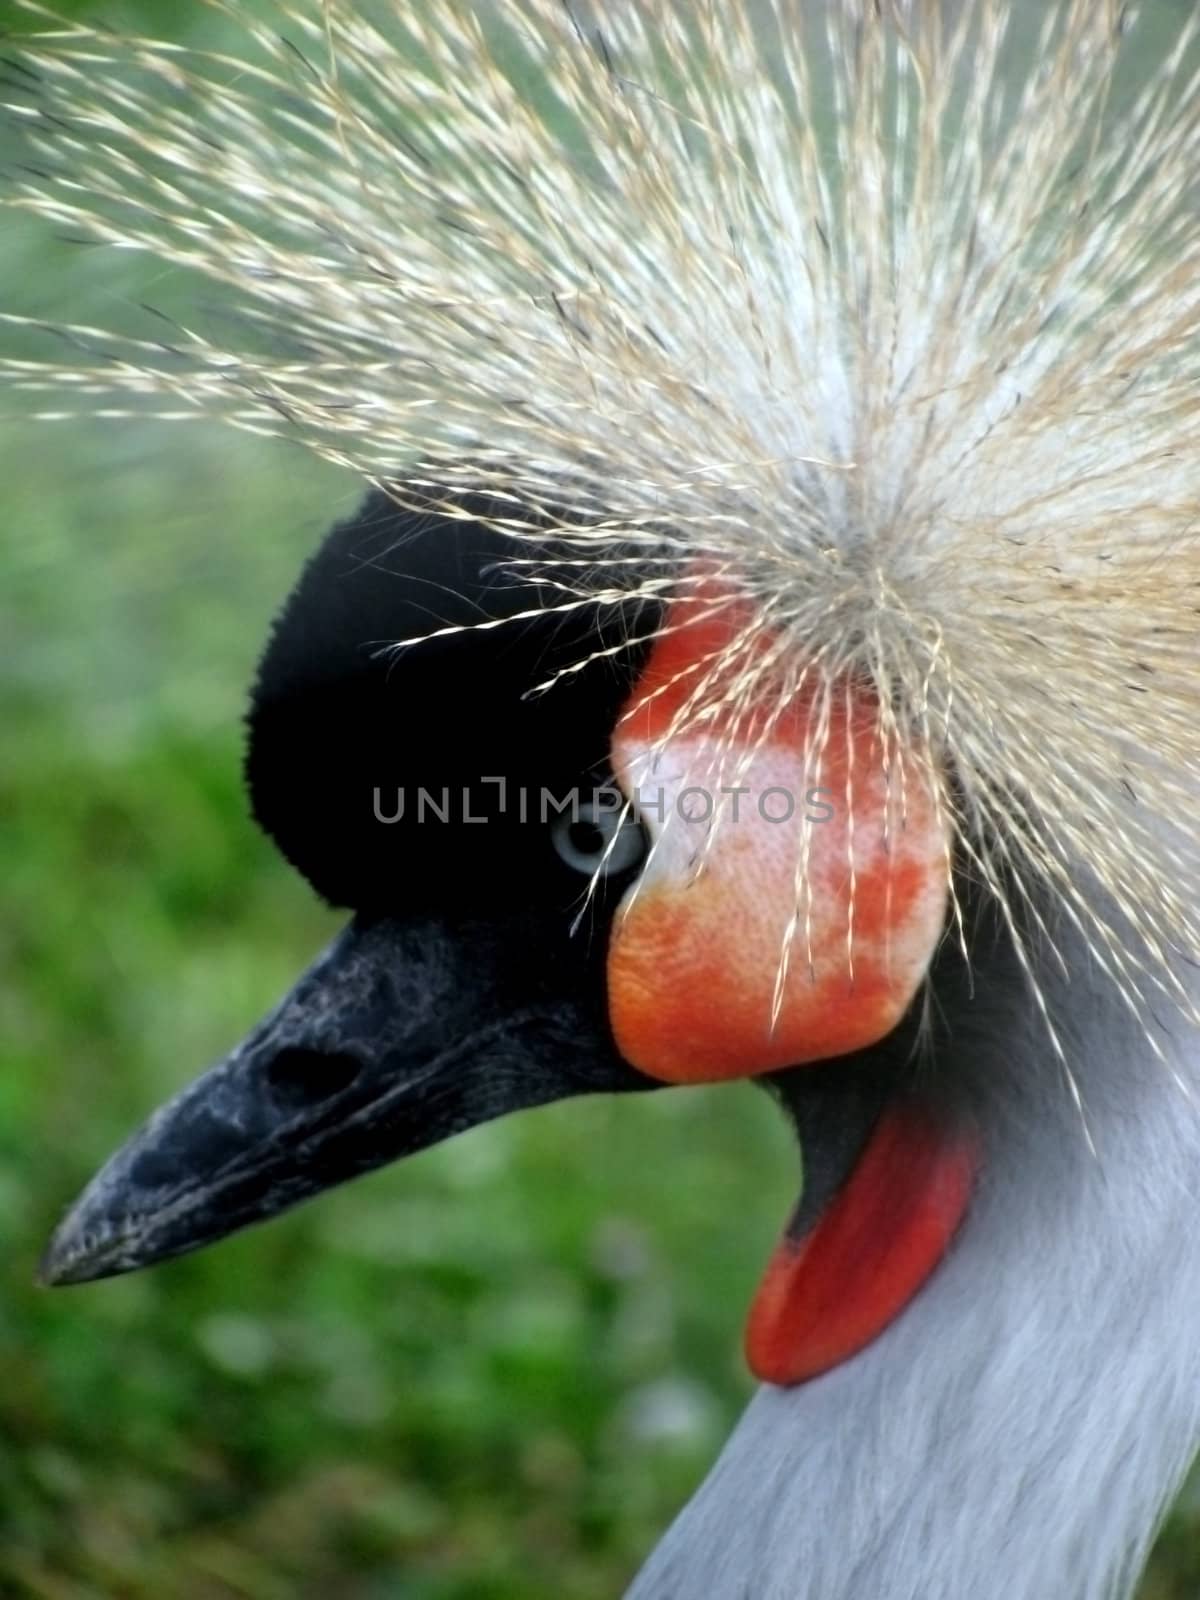 crowned crane head